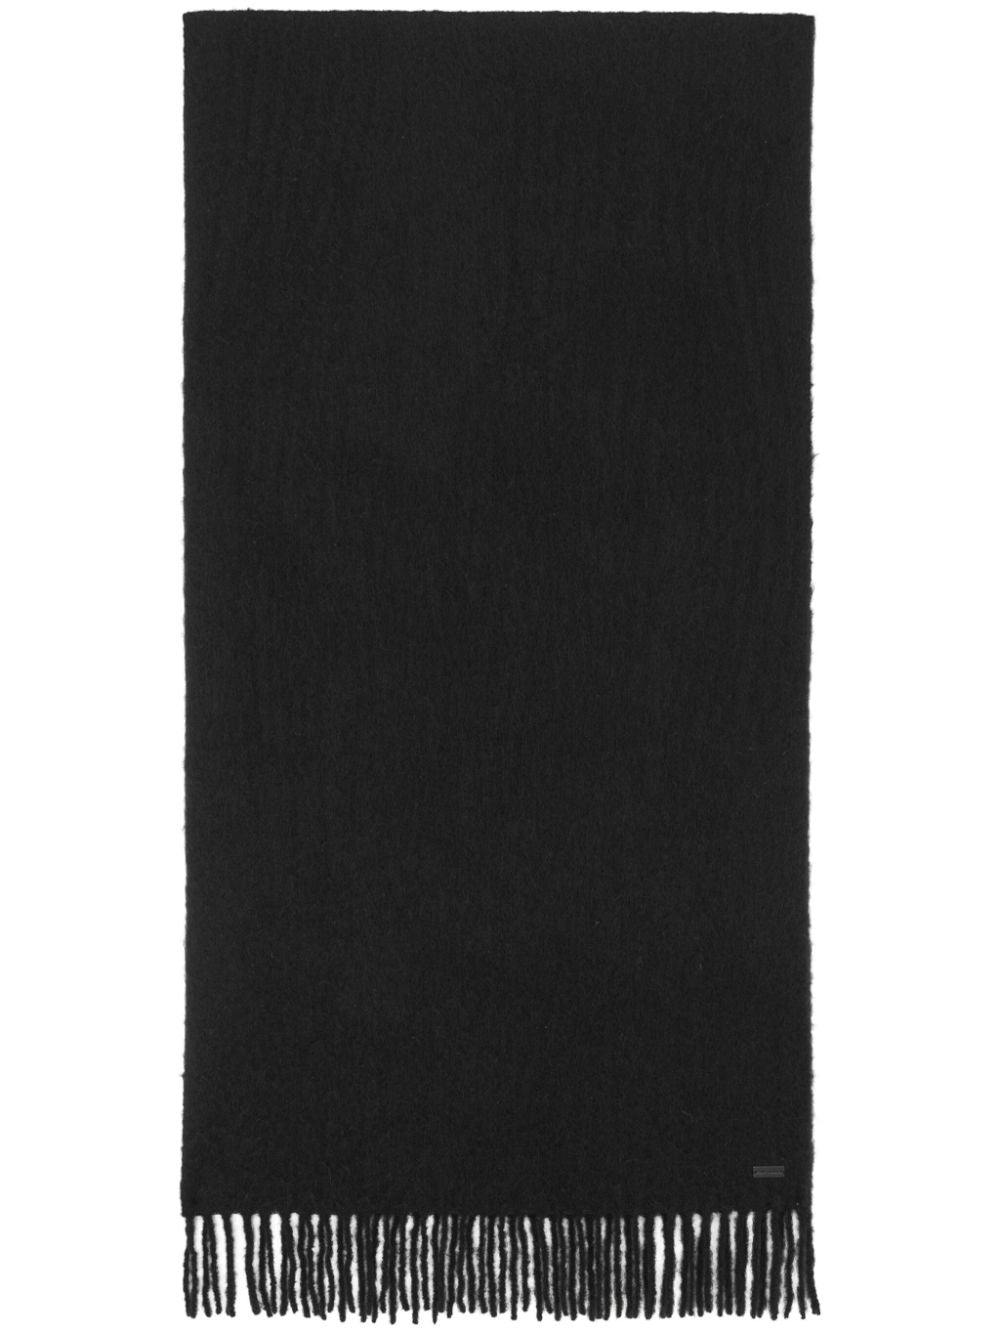 Khăn quàng ngực dệt màu đen với phụ kiện mạ và thiết kế quấn ring